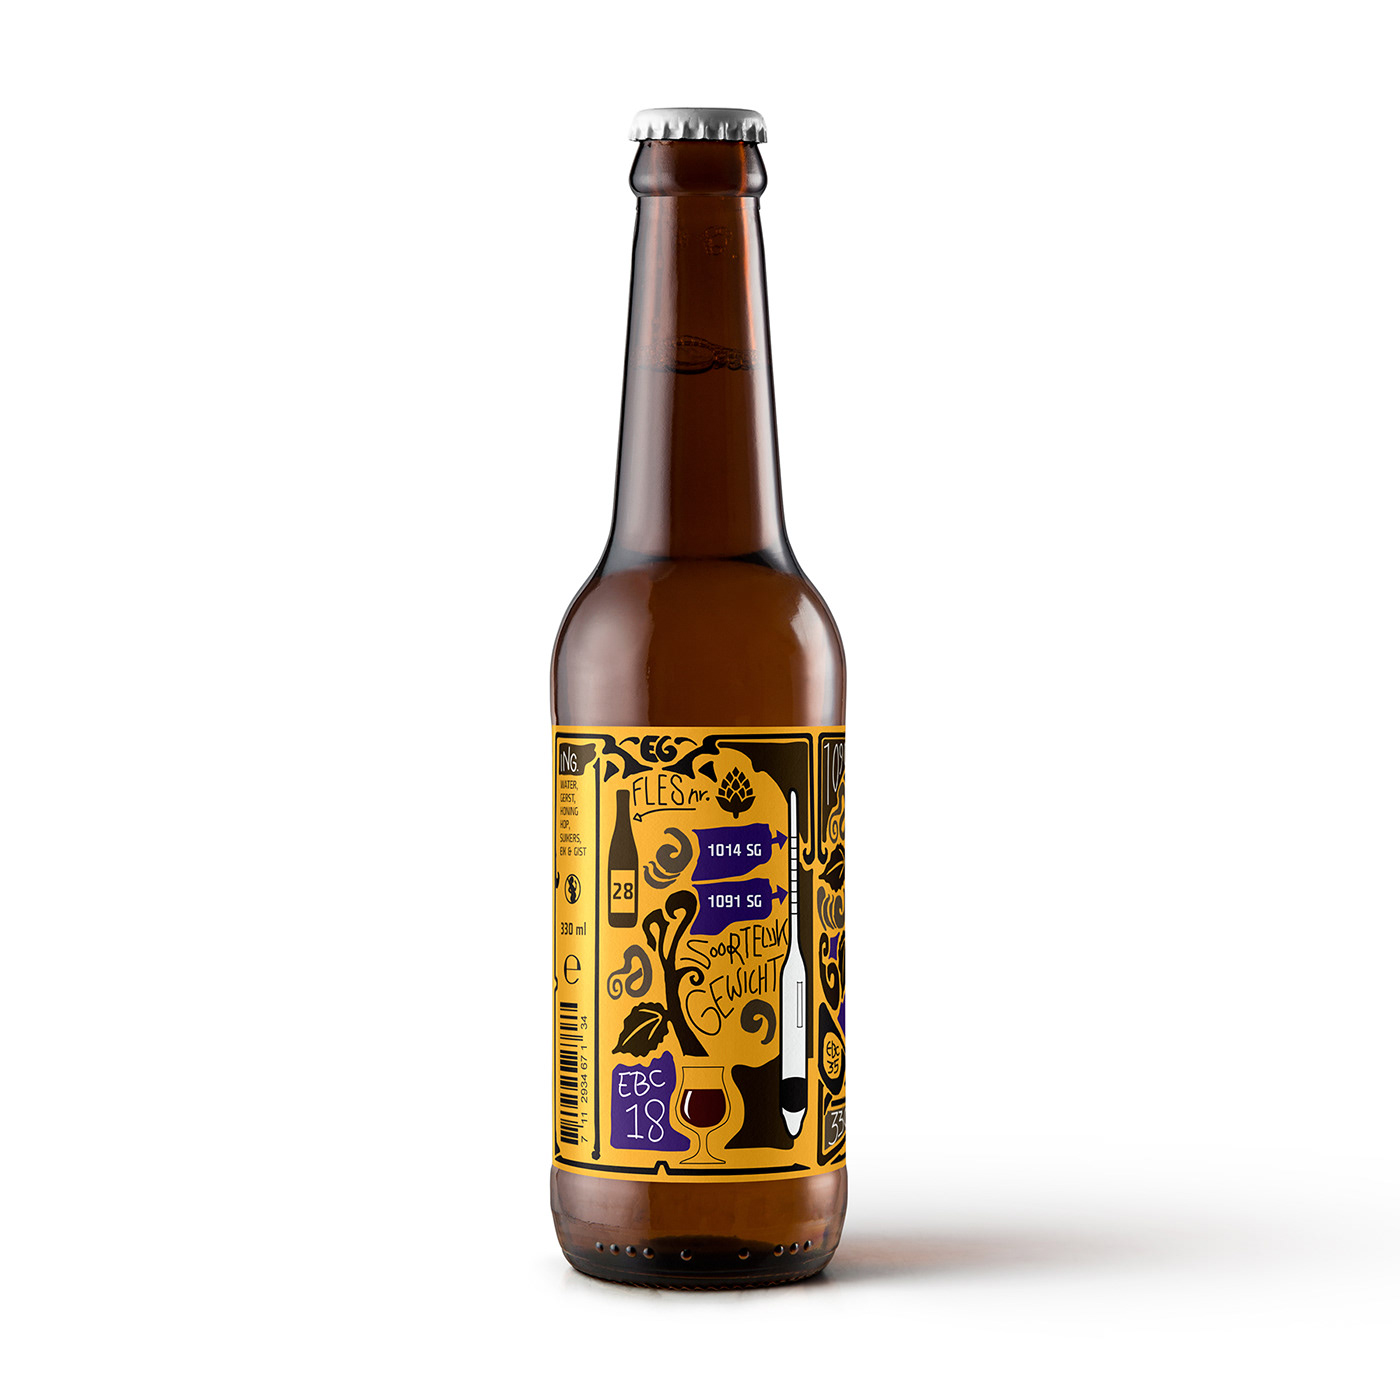 beer Label International award beerlabel glass beerglass beerbottle bottle